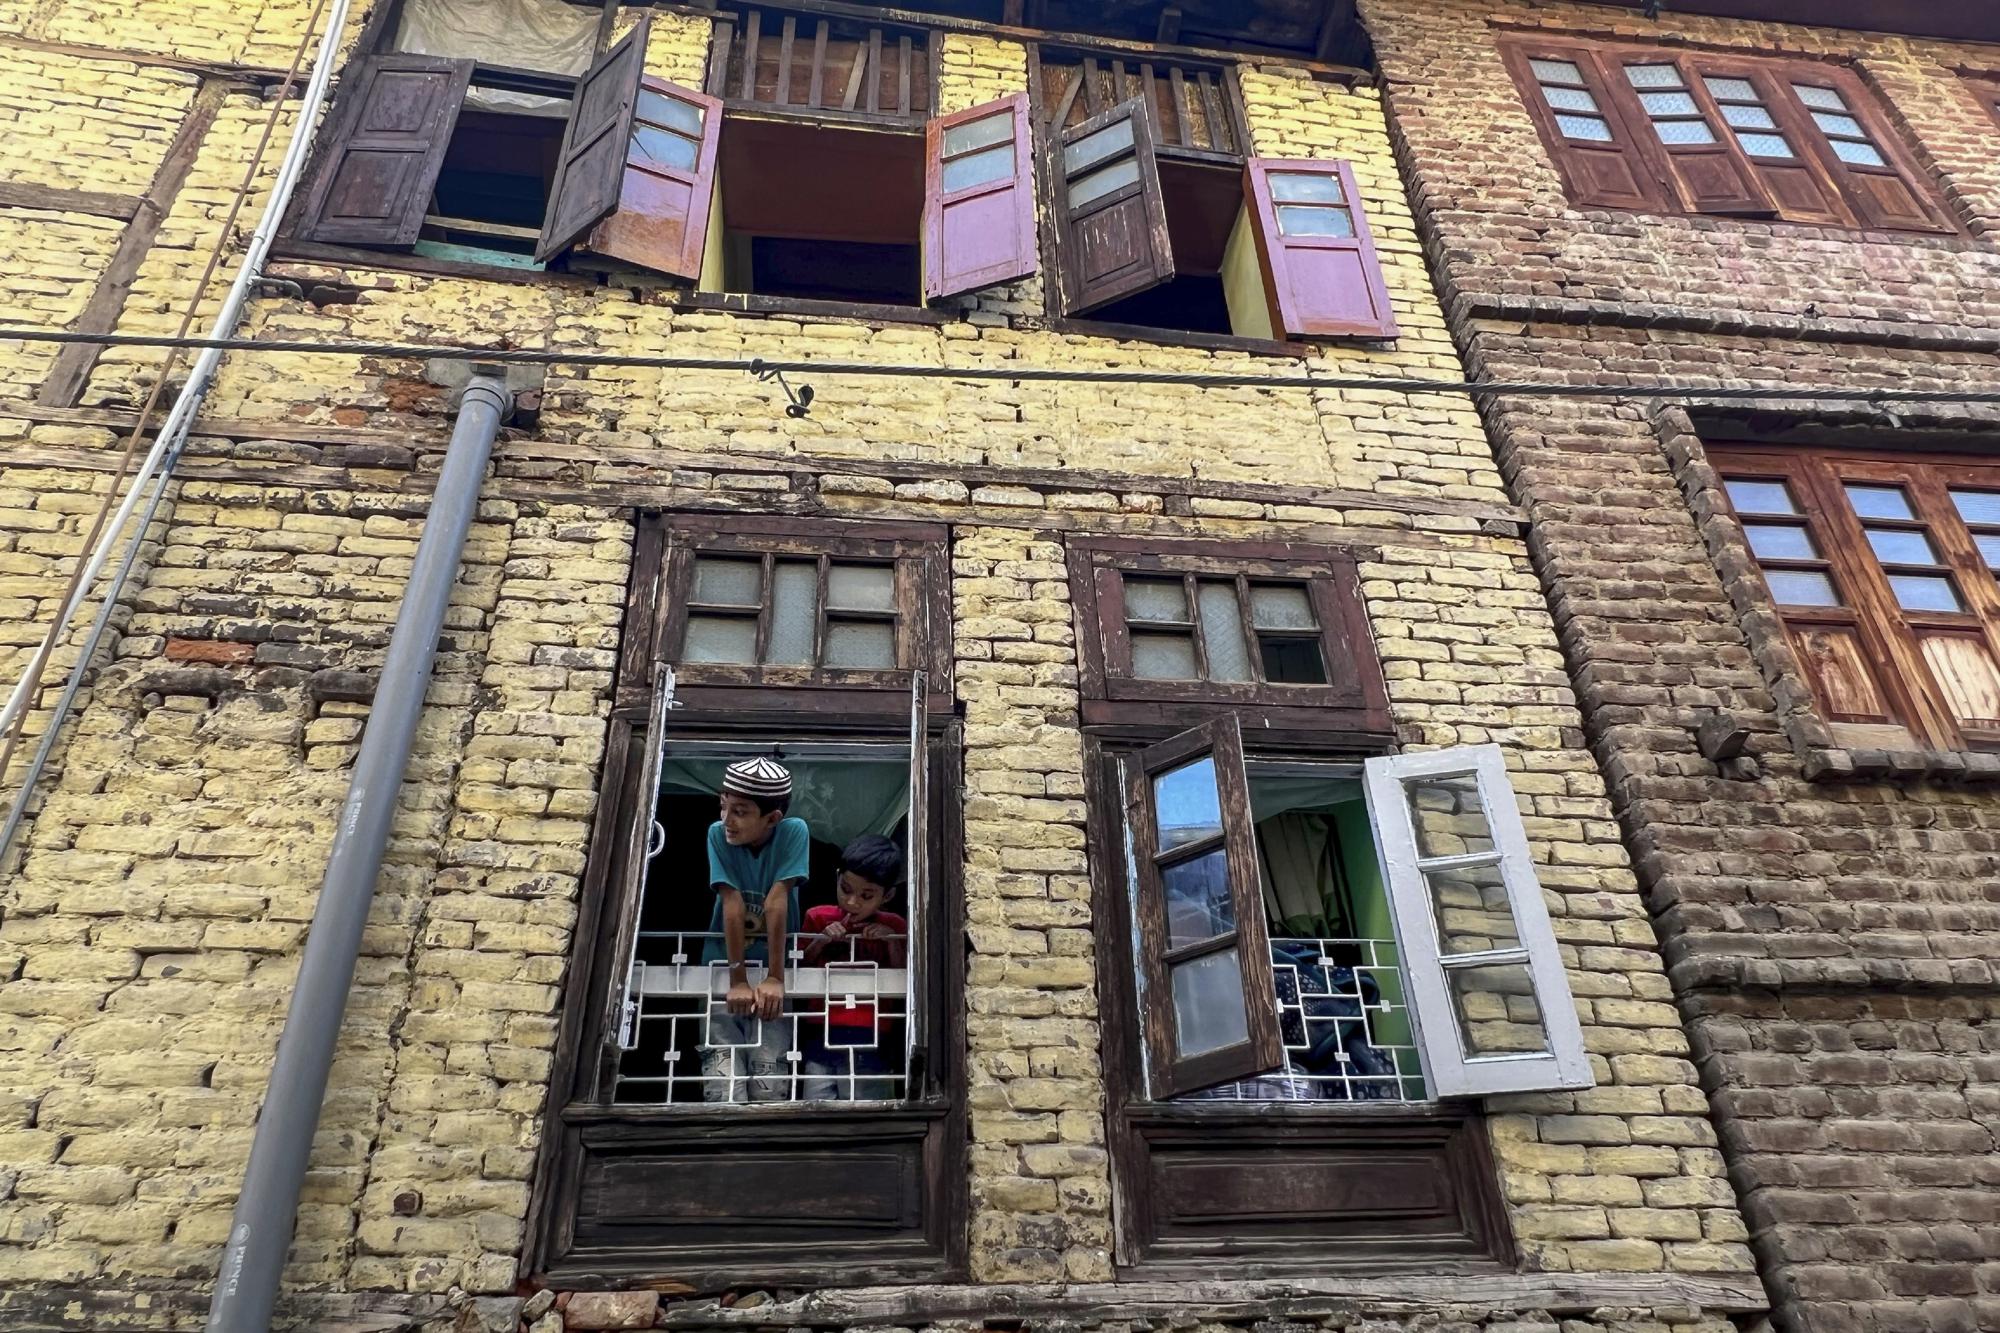 Tanzeel Ahmed, a la izquierda, y Umar Ahmed, hijos de trabajadores migrantes del estado de Uttar Pradesh, miran desde la ventana de su casa alquilada en Srinagar, Cachemira controlada por la India, en esta foto de iPhone del martes 14 de junio de 2022.  "Las fotos que ahora se toman con los últimos teléfonos se sienten más como arte digital que fotografías. Lo que ves a simple vista no es lo que ves en la pantalla. Y eso para mí es muy inquietante", escribió Yasin.  (Foto AP/Dar Yasin)